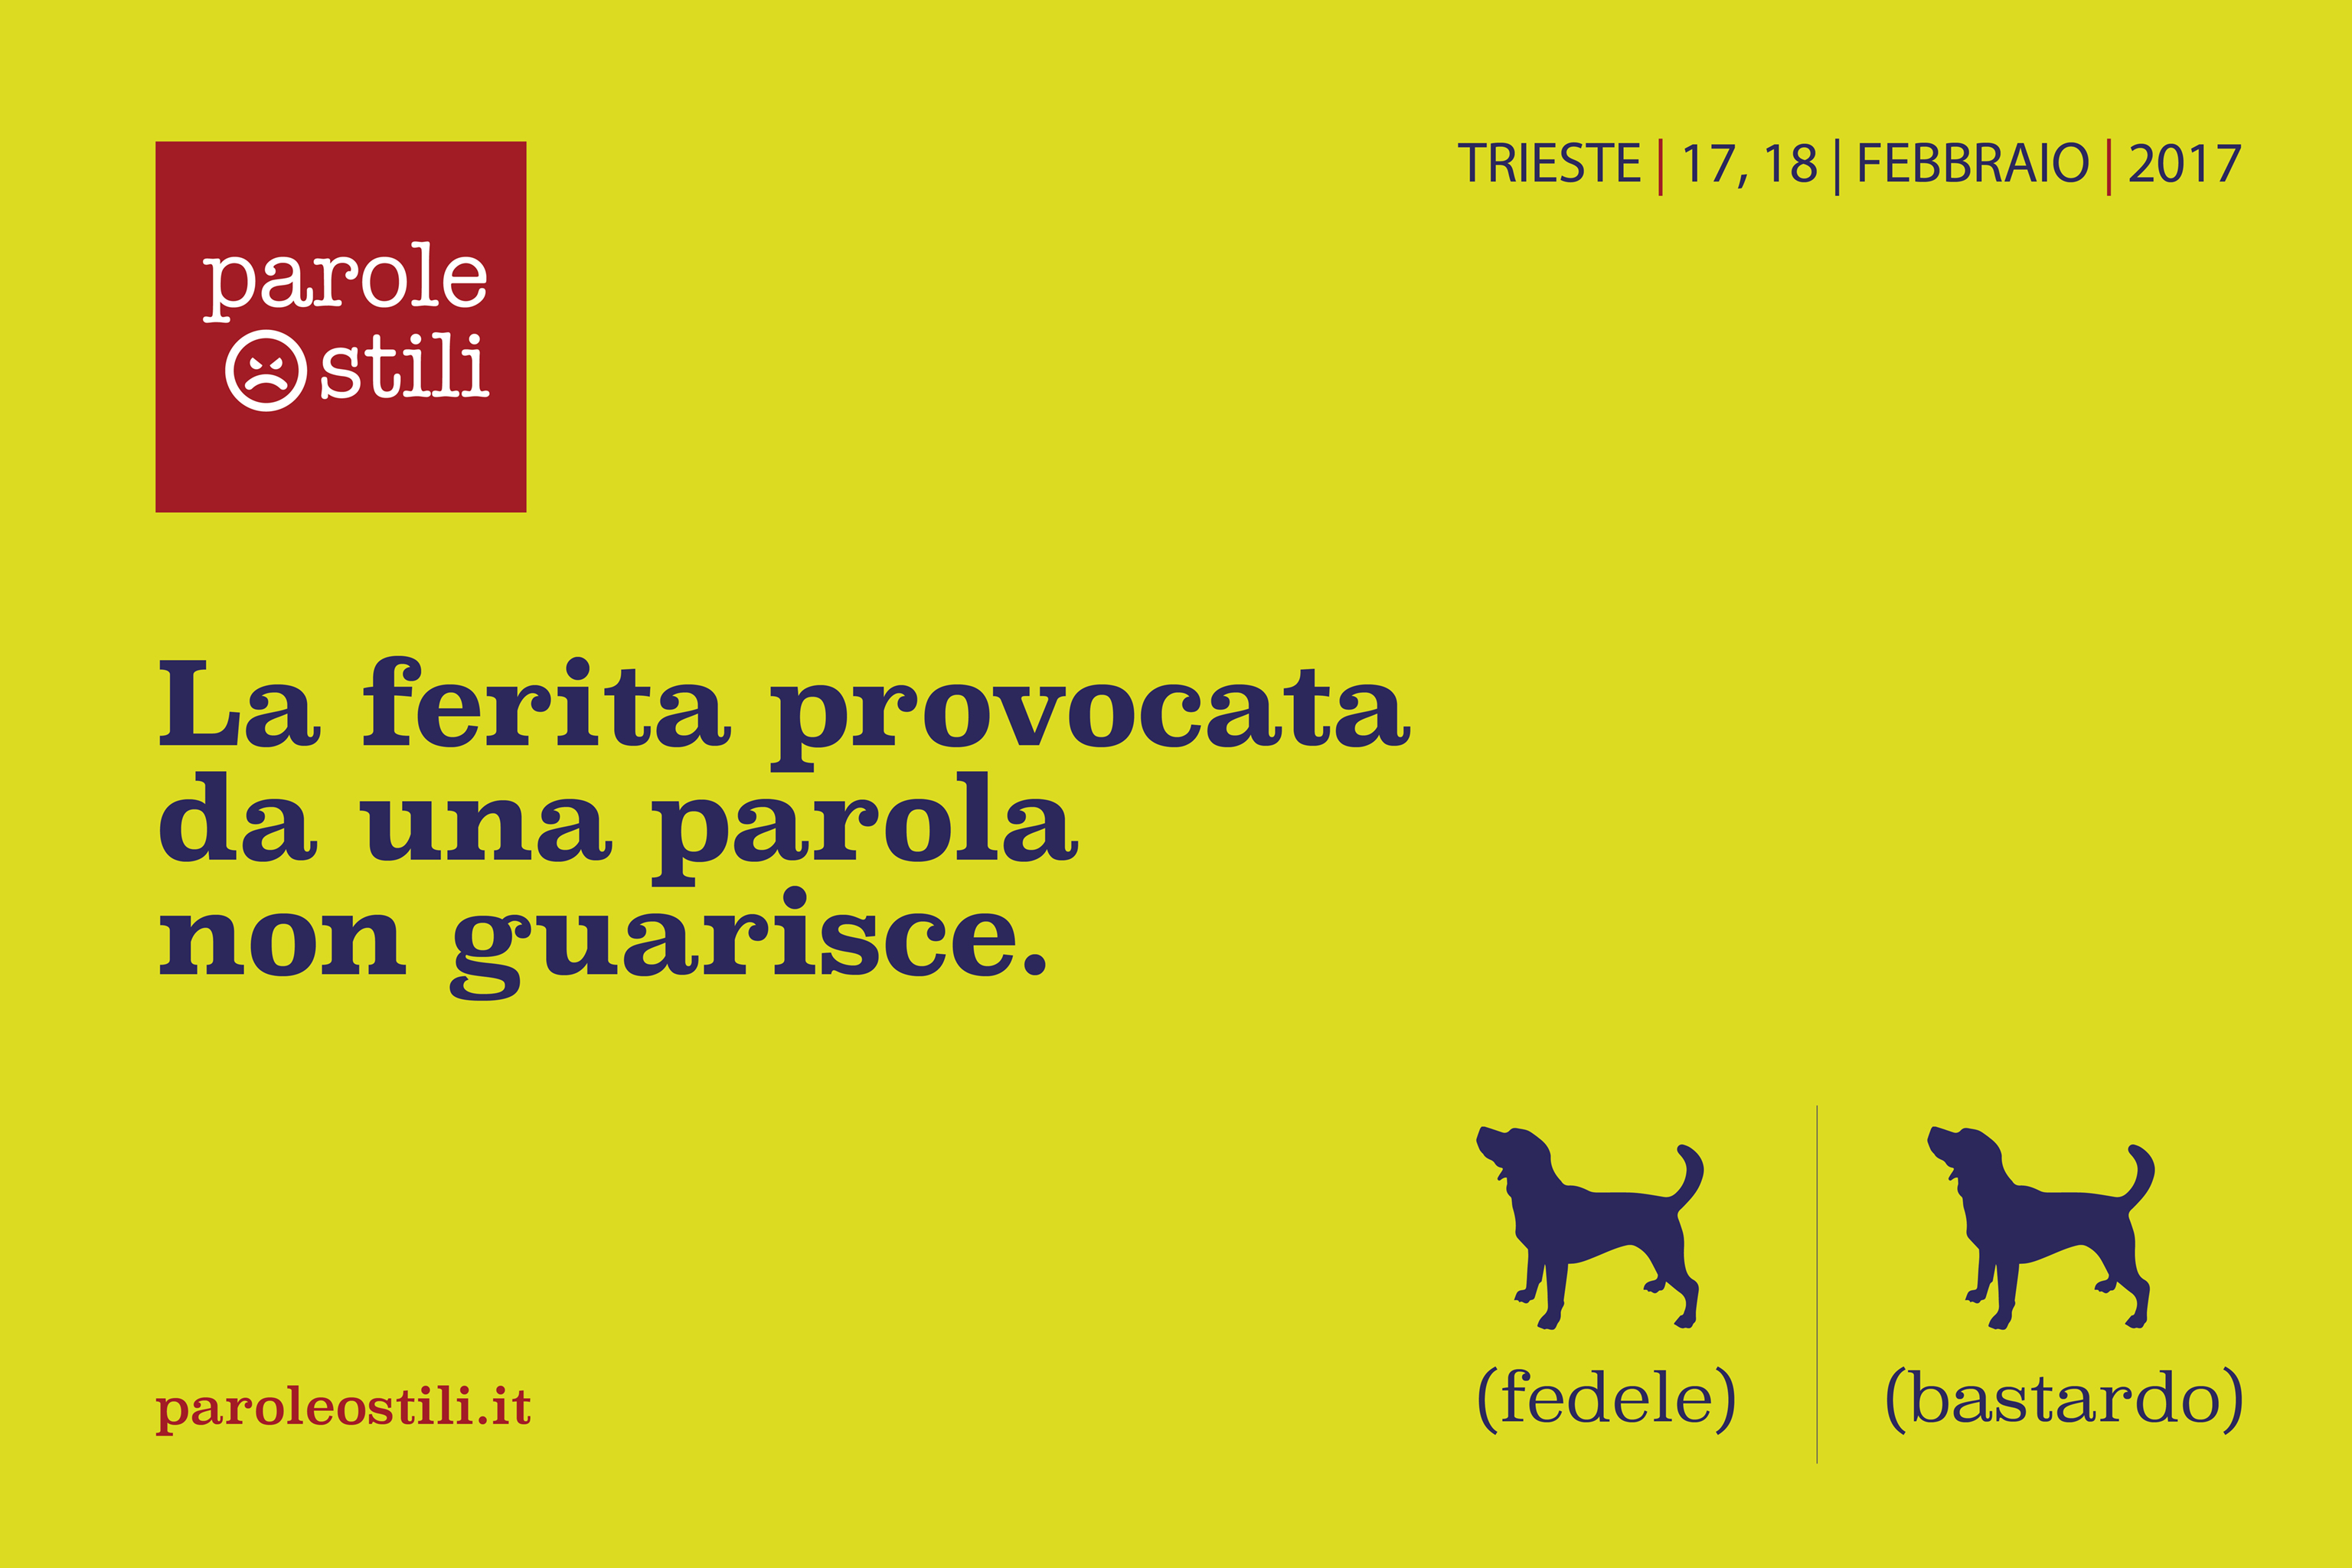 Parole Ostili: a Trieste il 17 e 18 febbraio giornalisti, docenti e istituzioni contro l'odio in rete